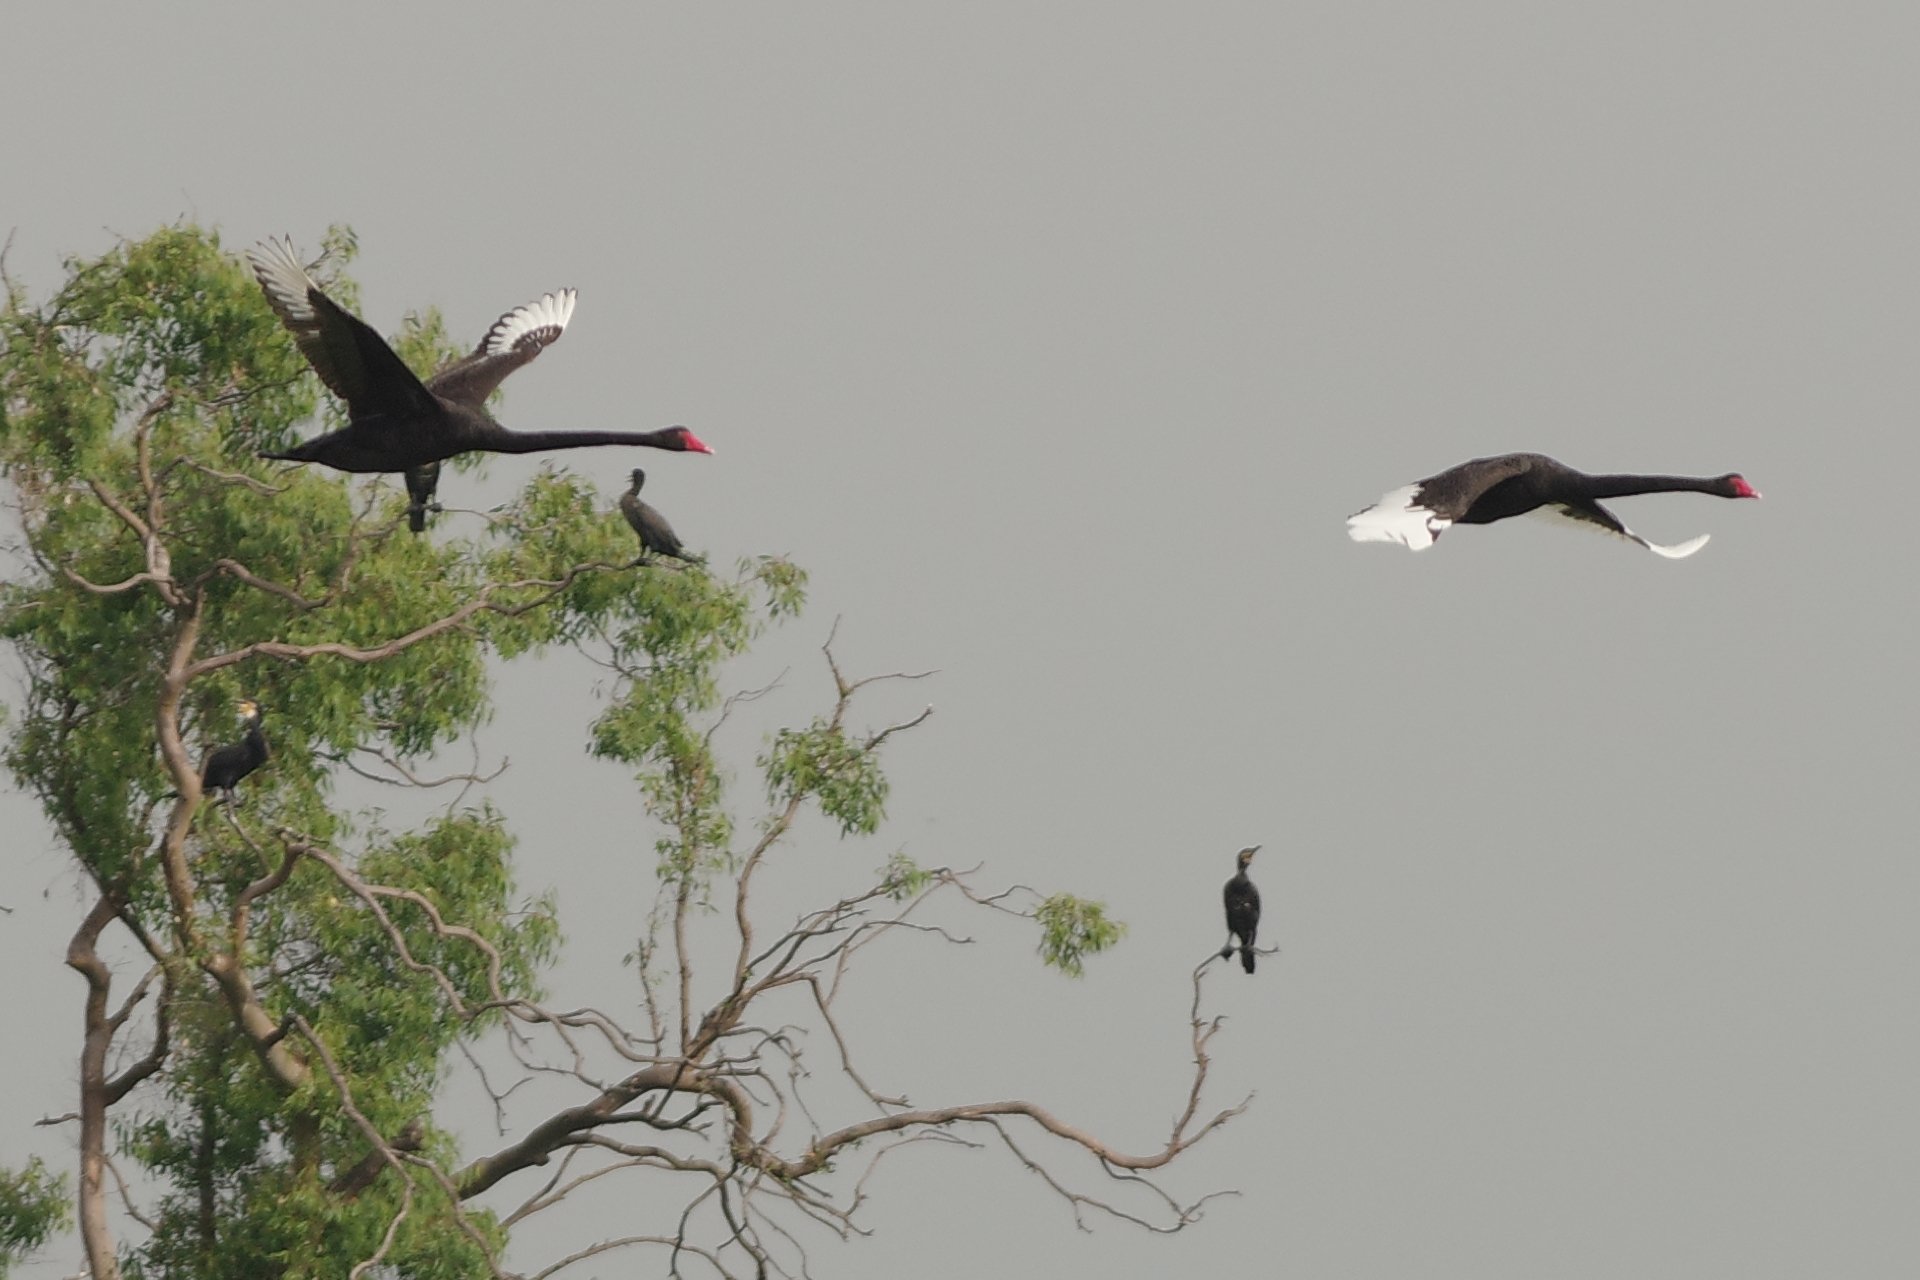 Il volo dei cigni neri in natura, quasi un disegno...